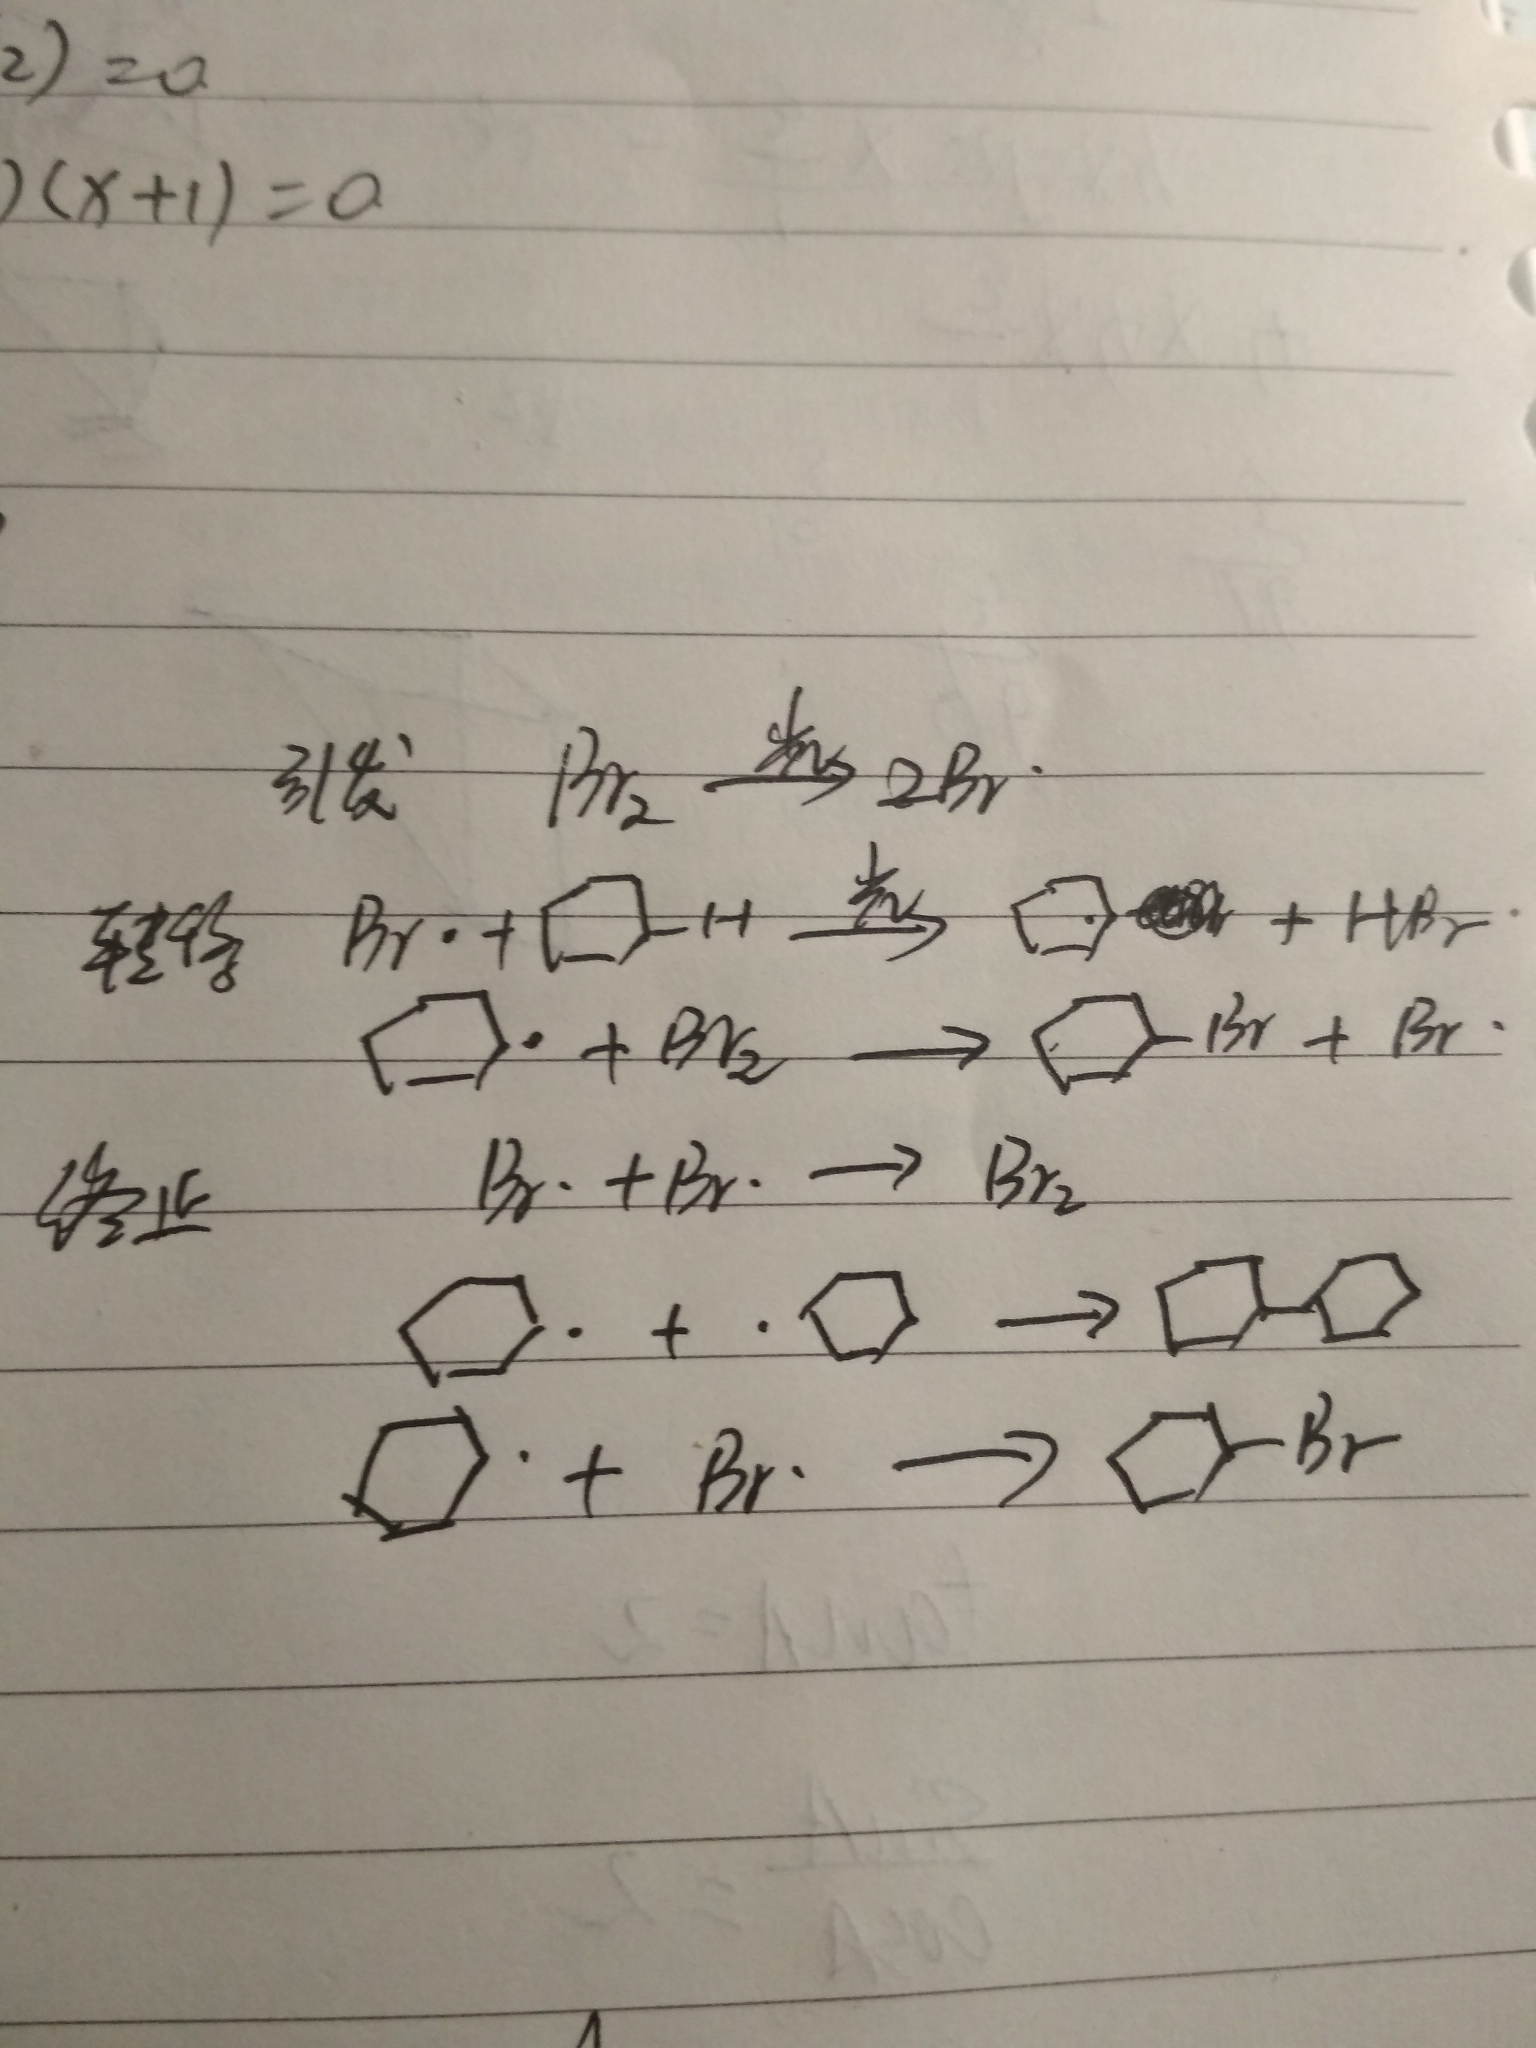 溴在与环烷烃发生反应时溴发生了什么杂化或者没有发生杂化